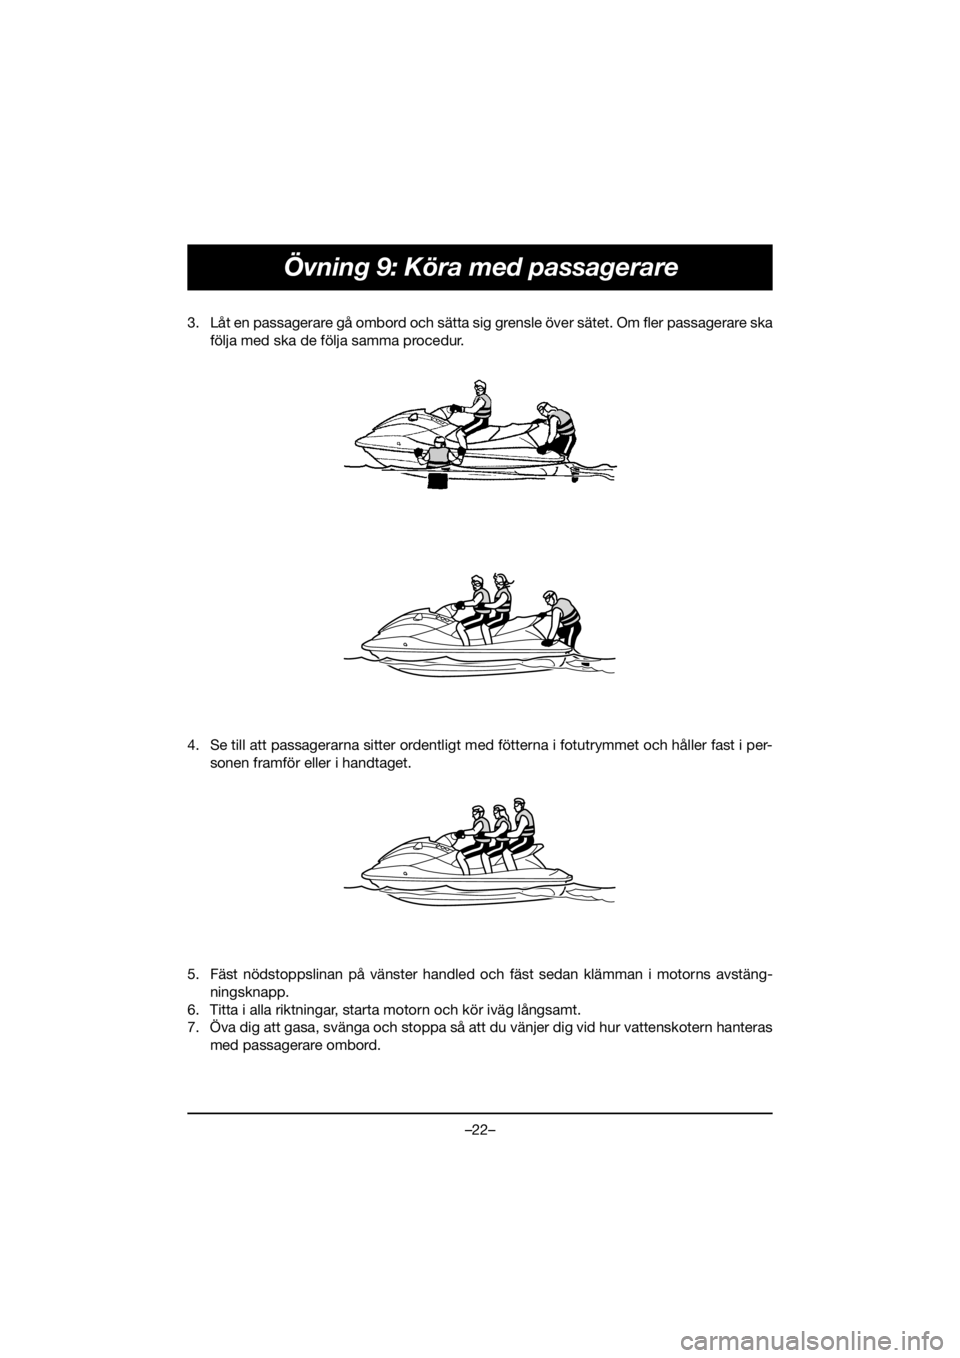 YAMAHA EX DELUXE 2020  Owners Manual –22–
Övning 9: Köra med passagerare
3. Låt en passagerare gå ombord och sätta sig grensle över sätet. Om fler passagerare ska
följa med ska de följa samma procedur. 
4. Se till att passag